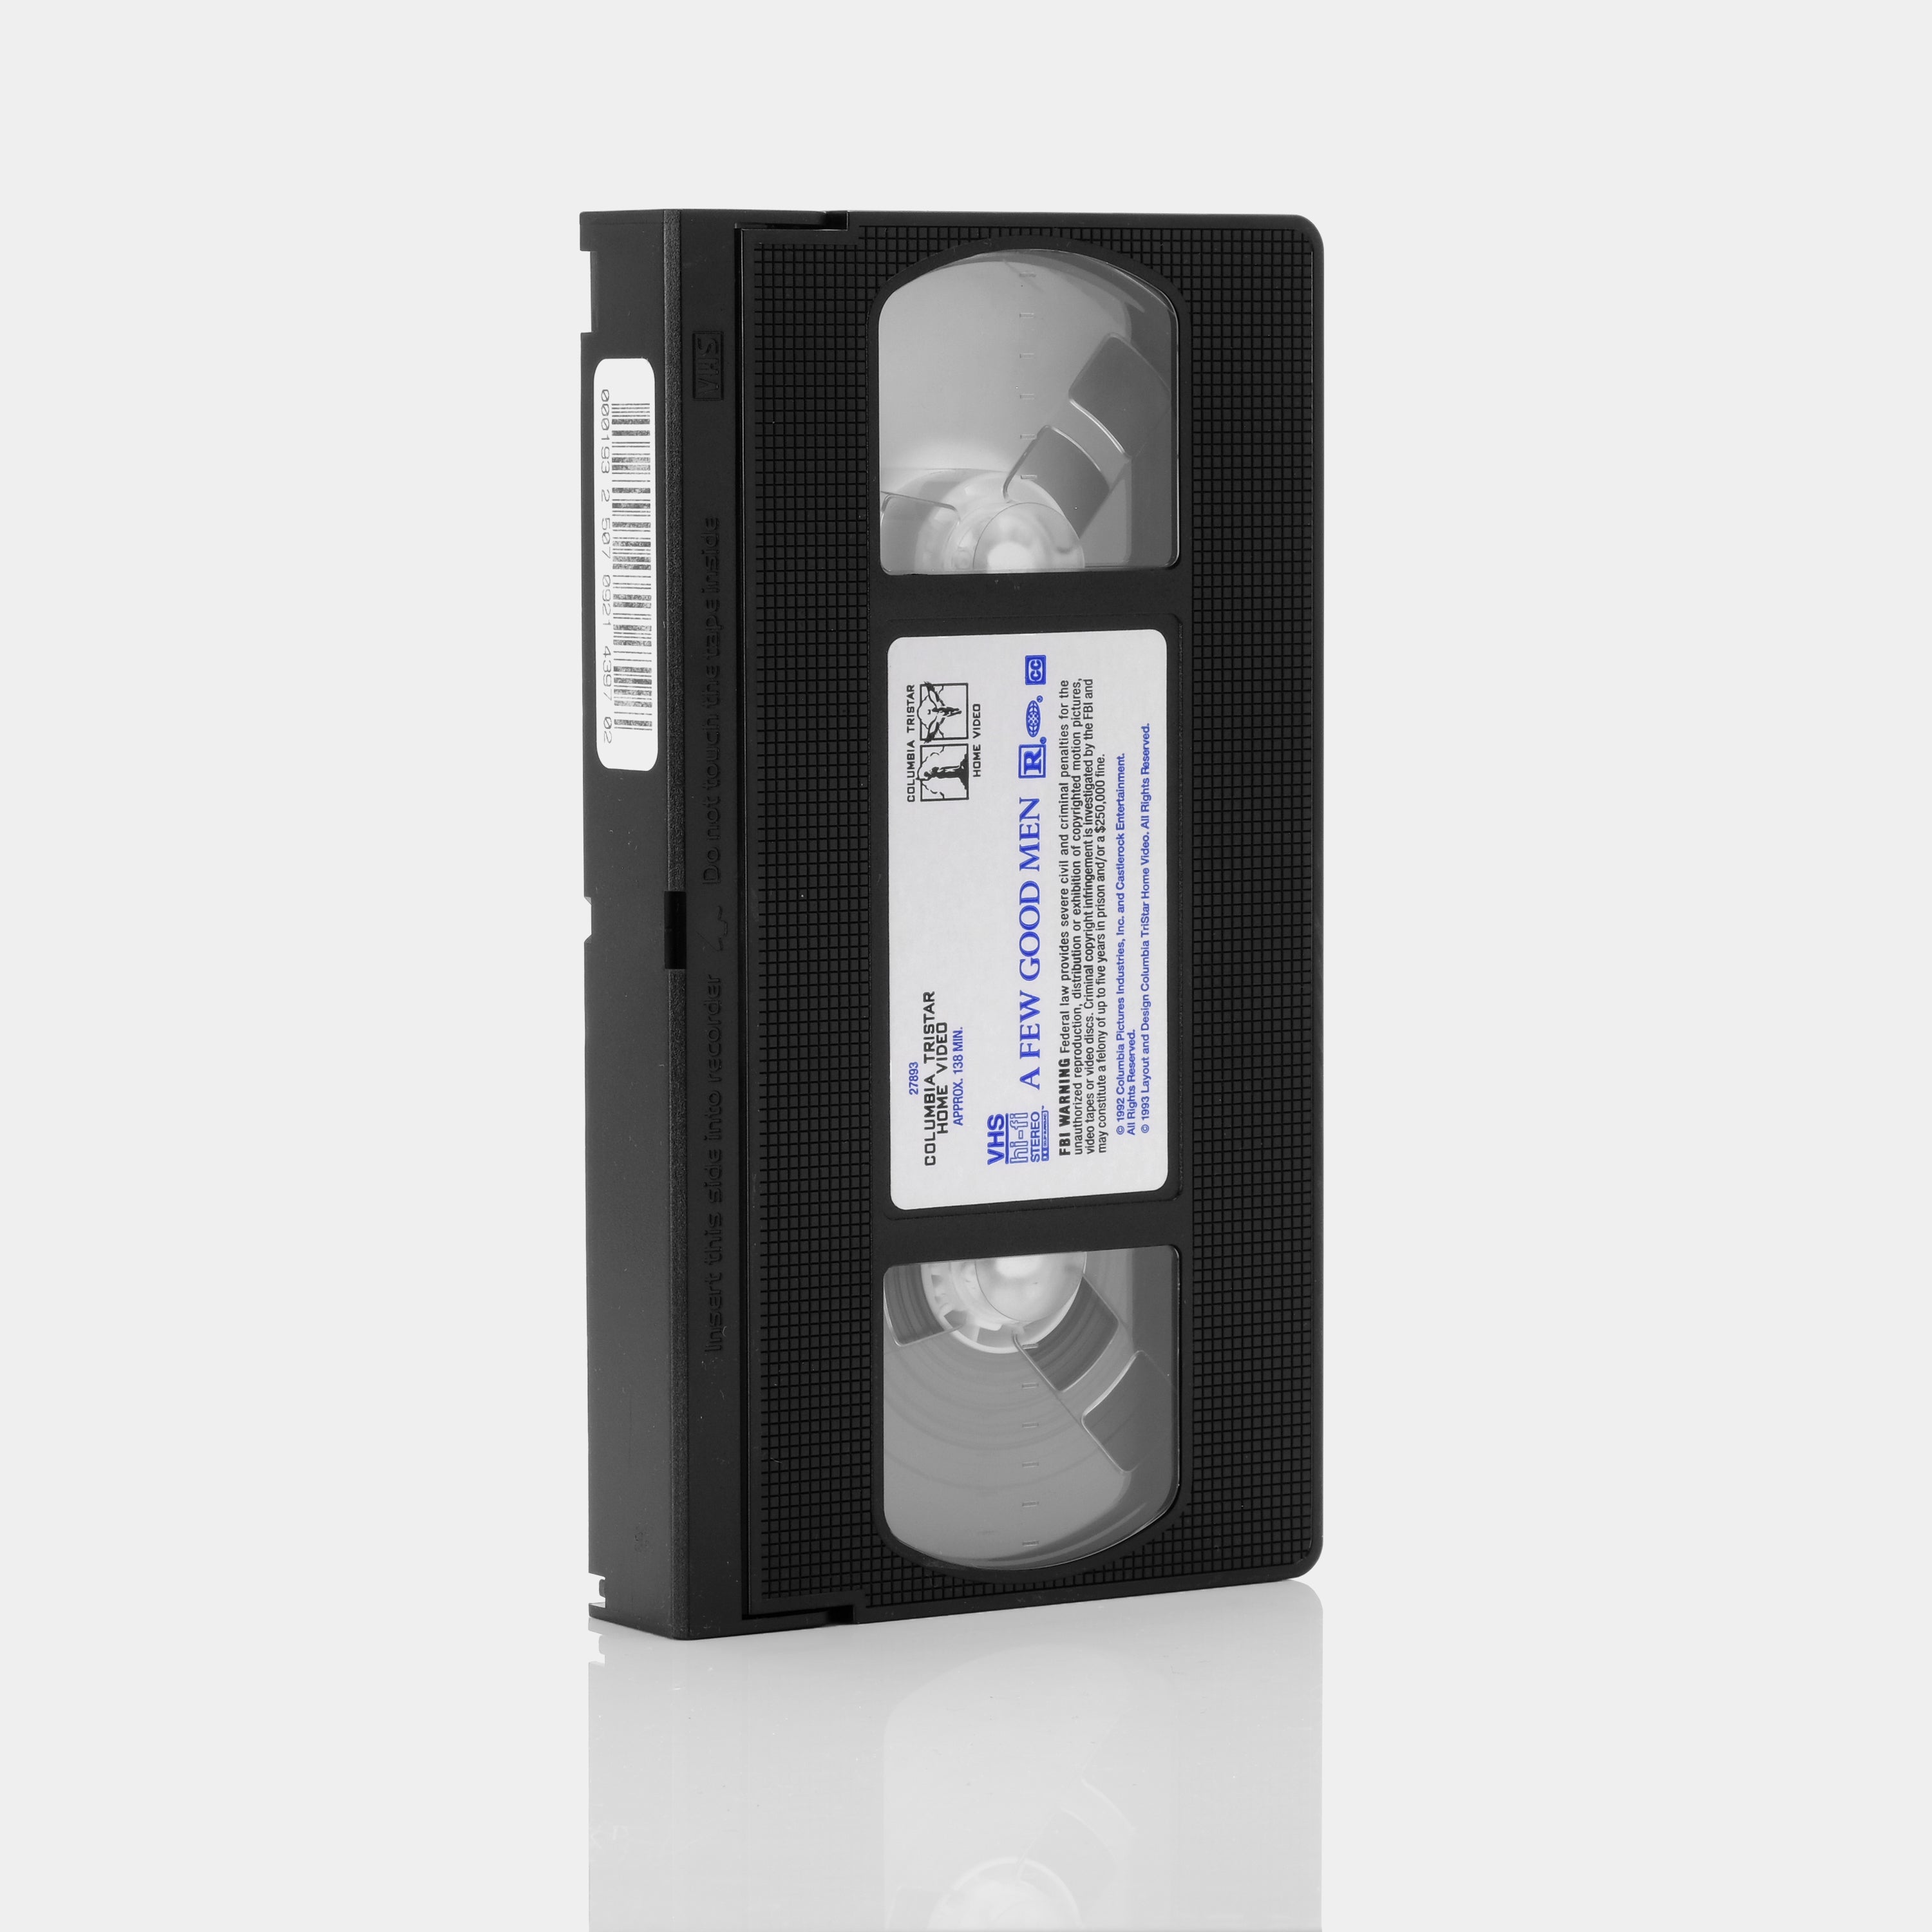 A Few Good Men VHS Tape